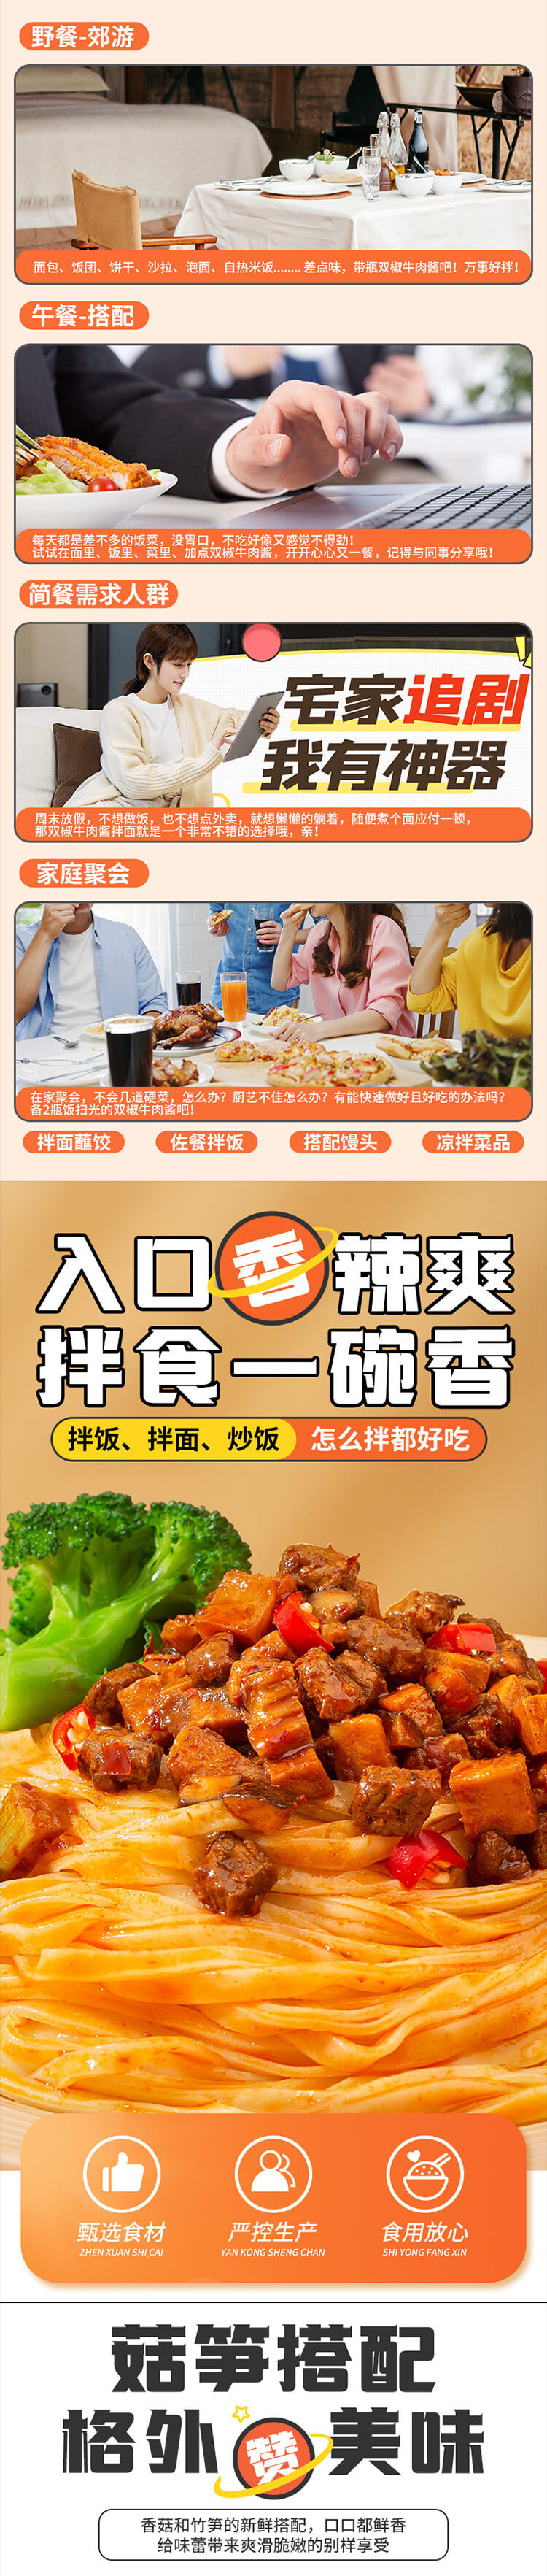 饭扫光 【成邮】香菇竹笋牛肉酱+双椒牛肉酱+豇豆肉臊 3*200g